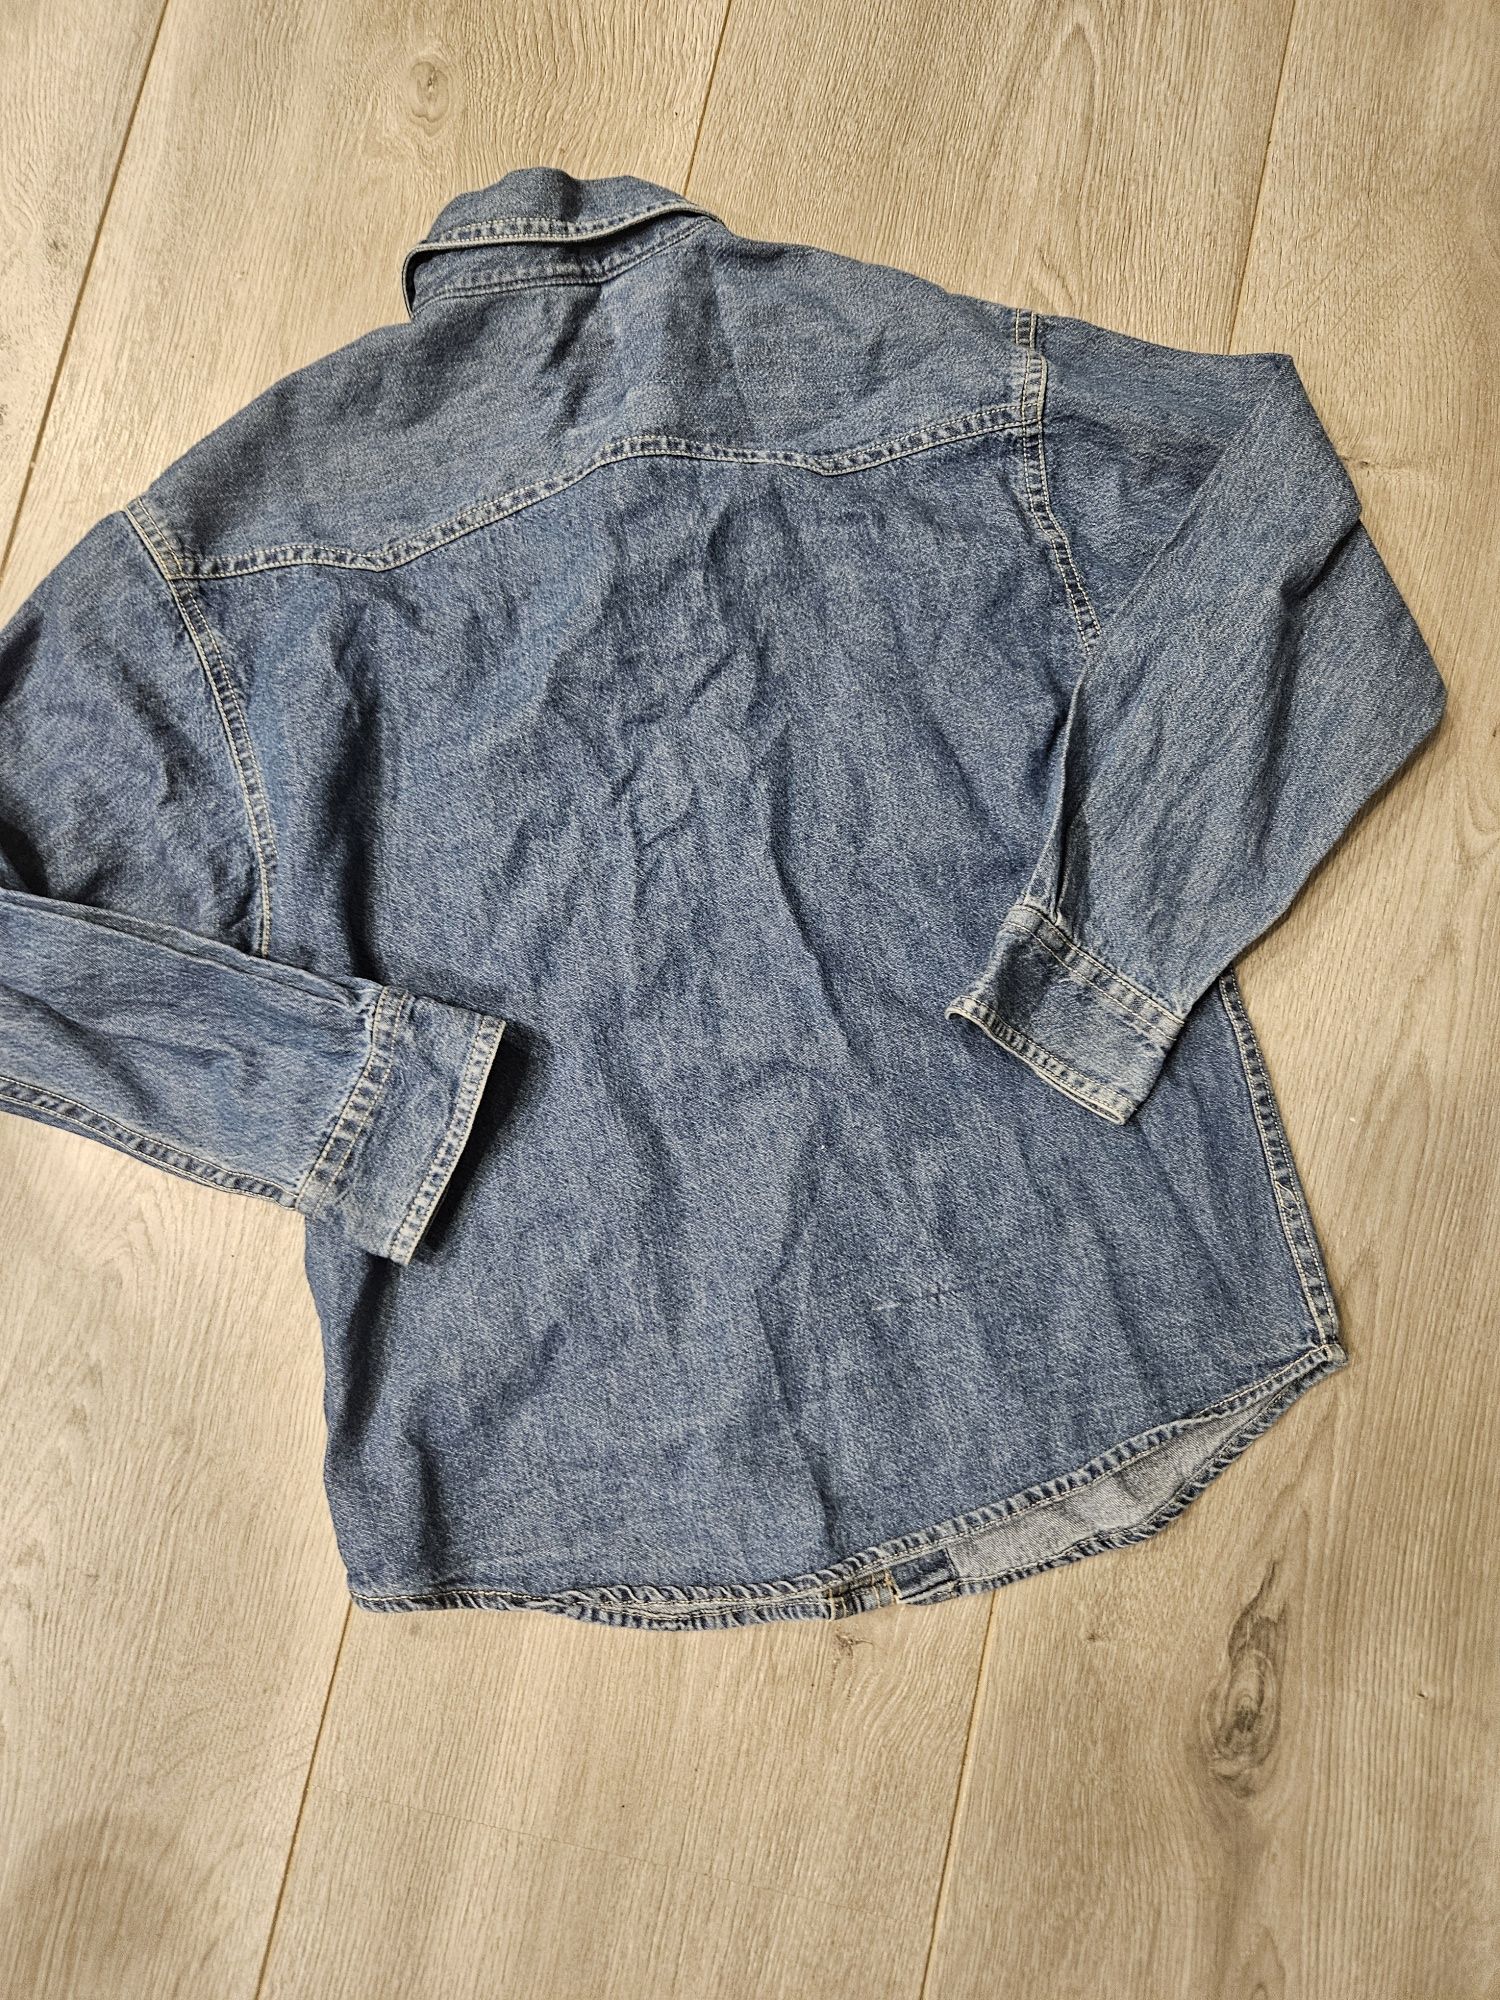 Jeansowa koszula dla chłopca C&A r 122/128